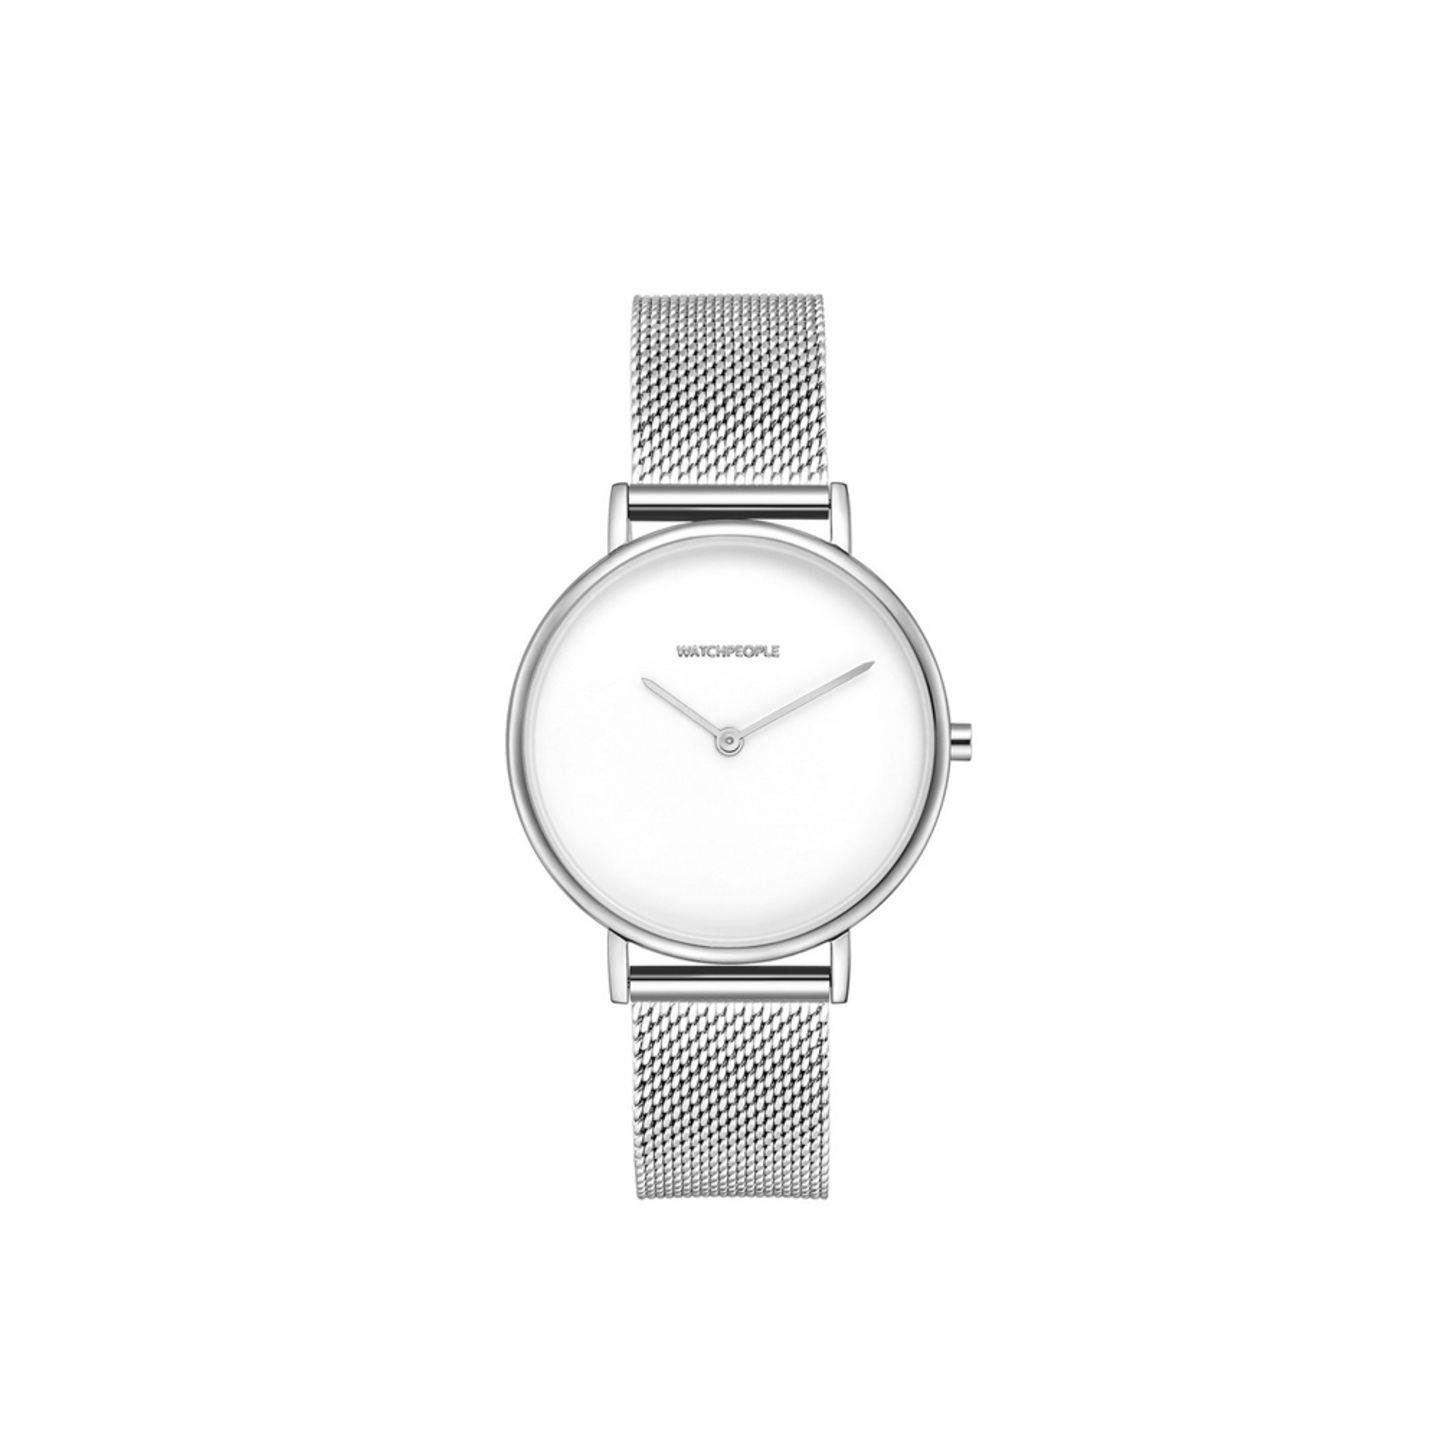 Die Zeit immer im Blick, mit der silbernen Armbanduhr von Watchpeople, um 99 Euro.